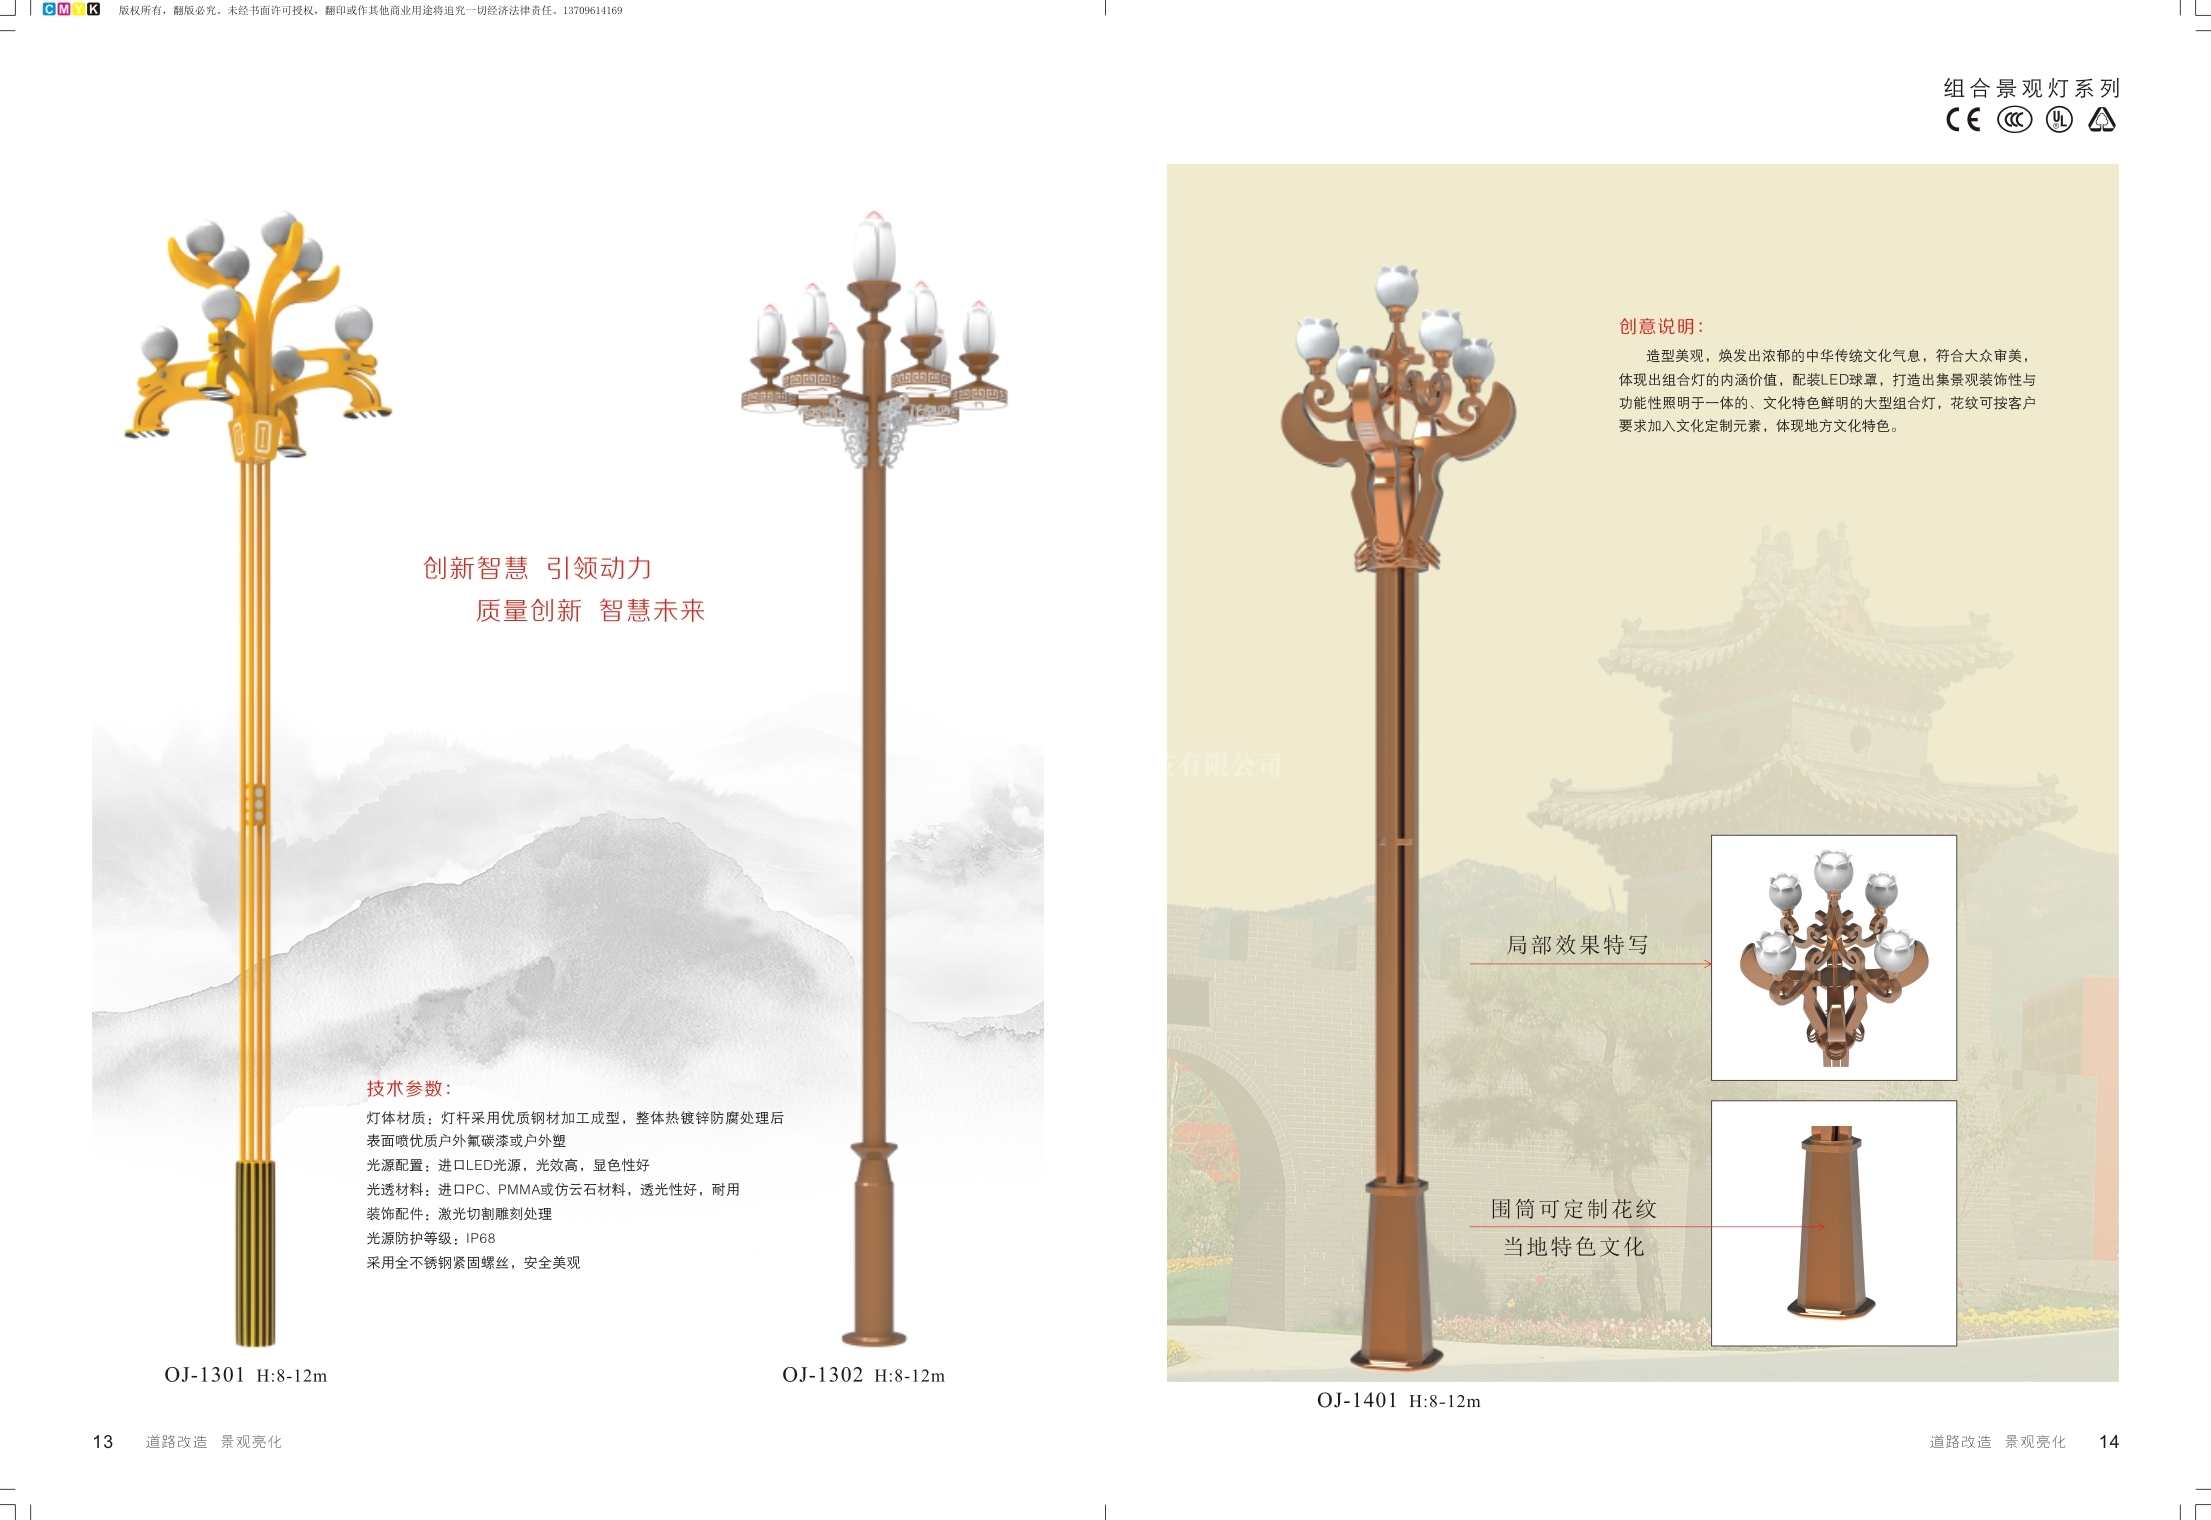 園(yuan)林(lin)景觀燈